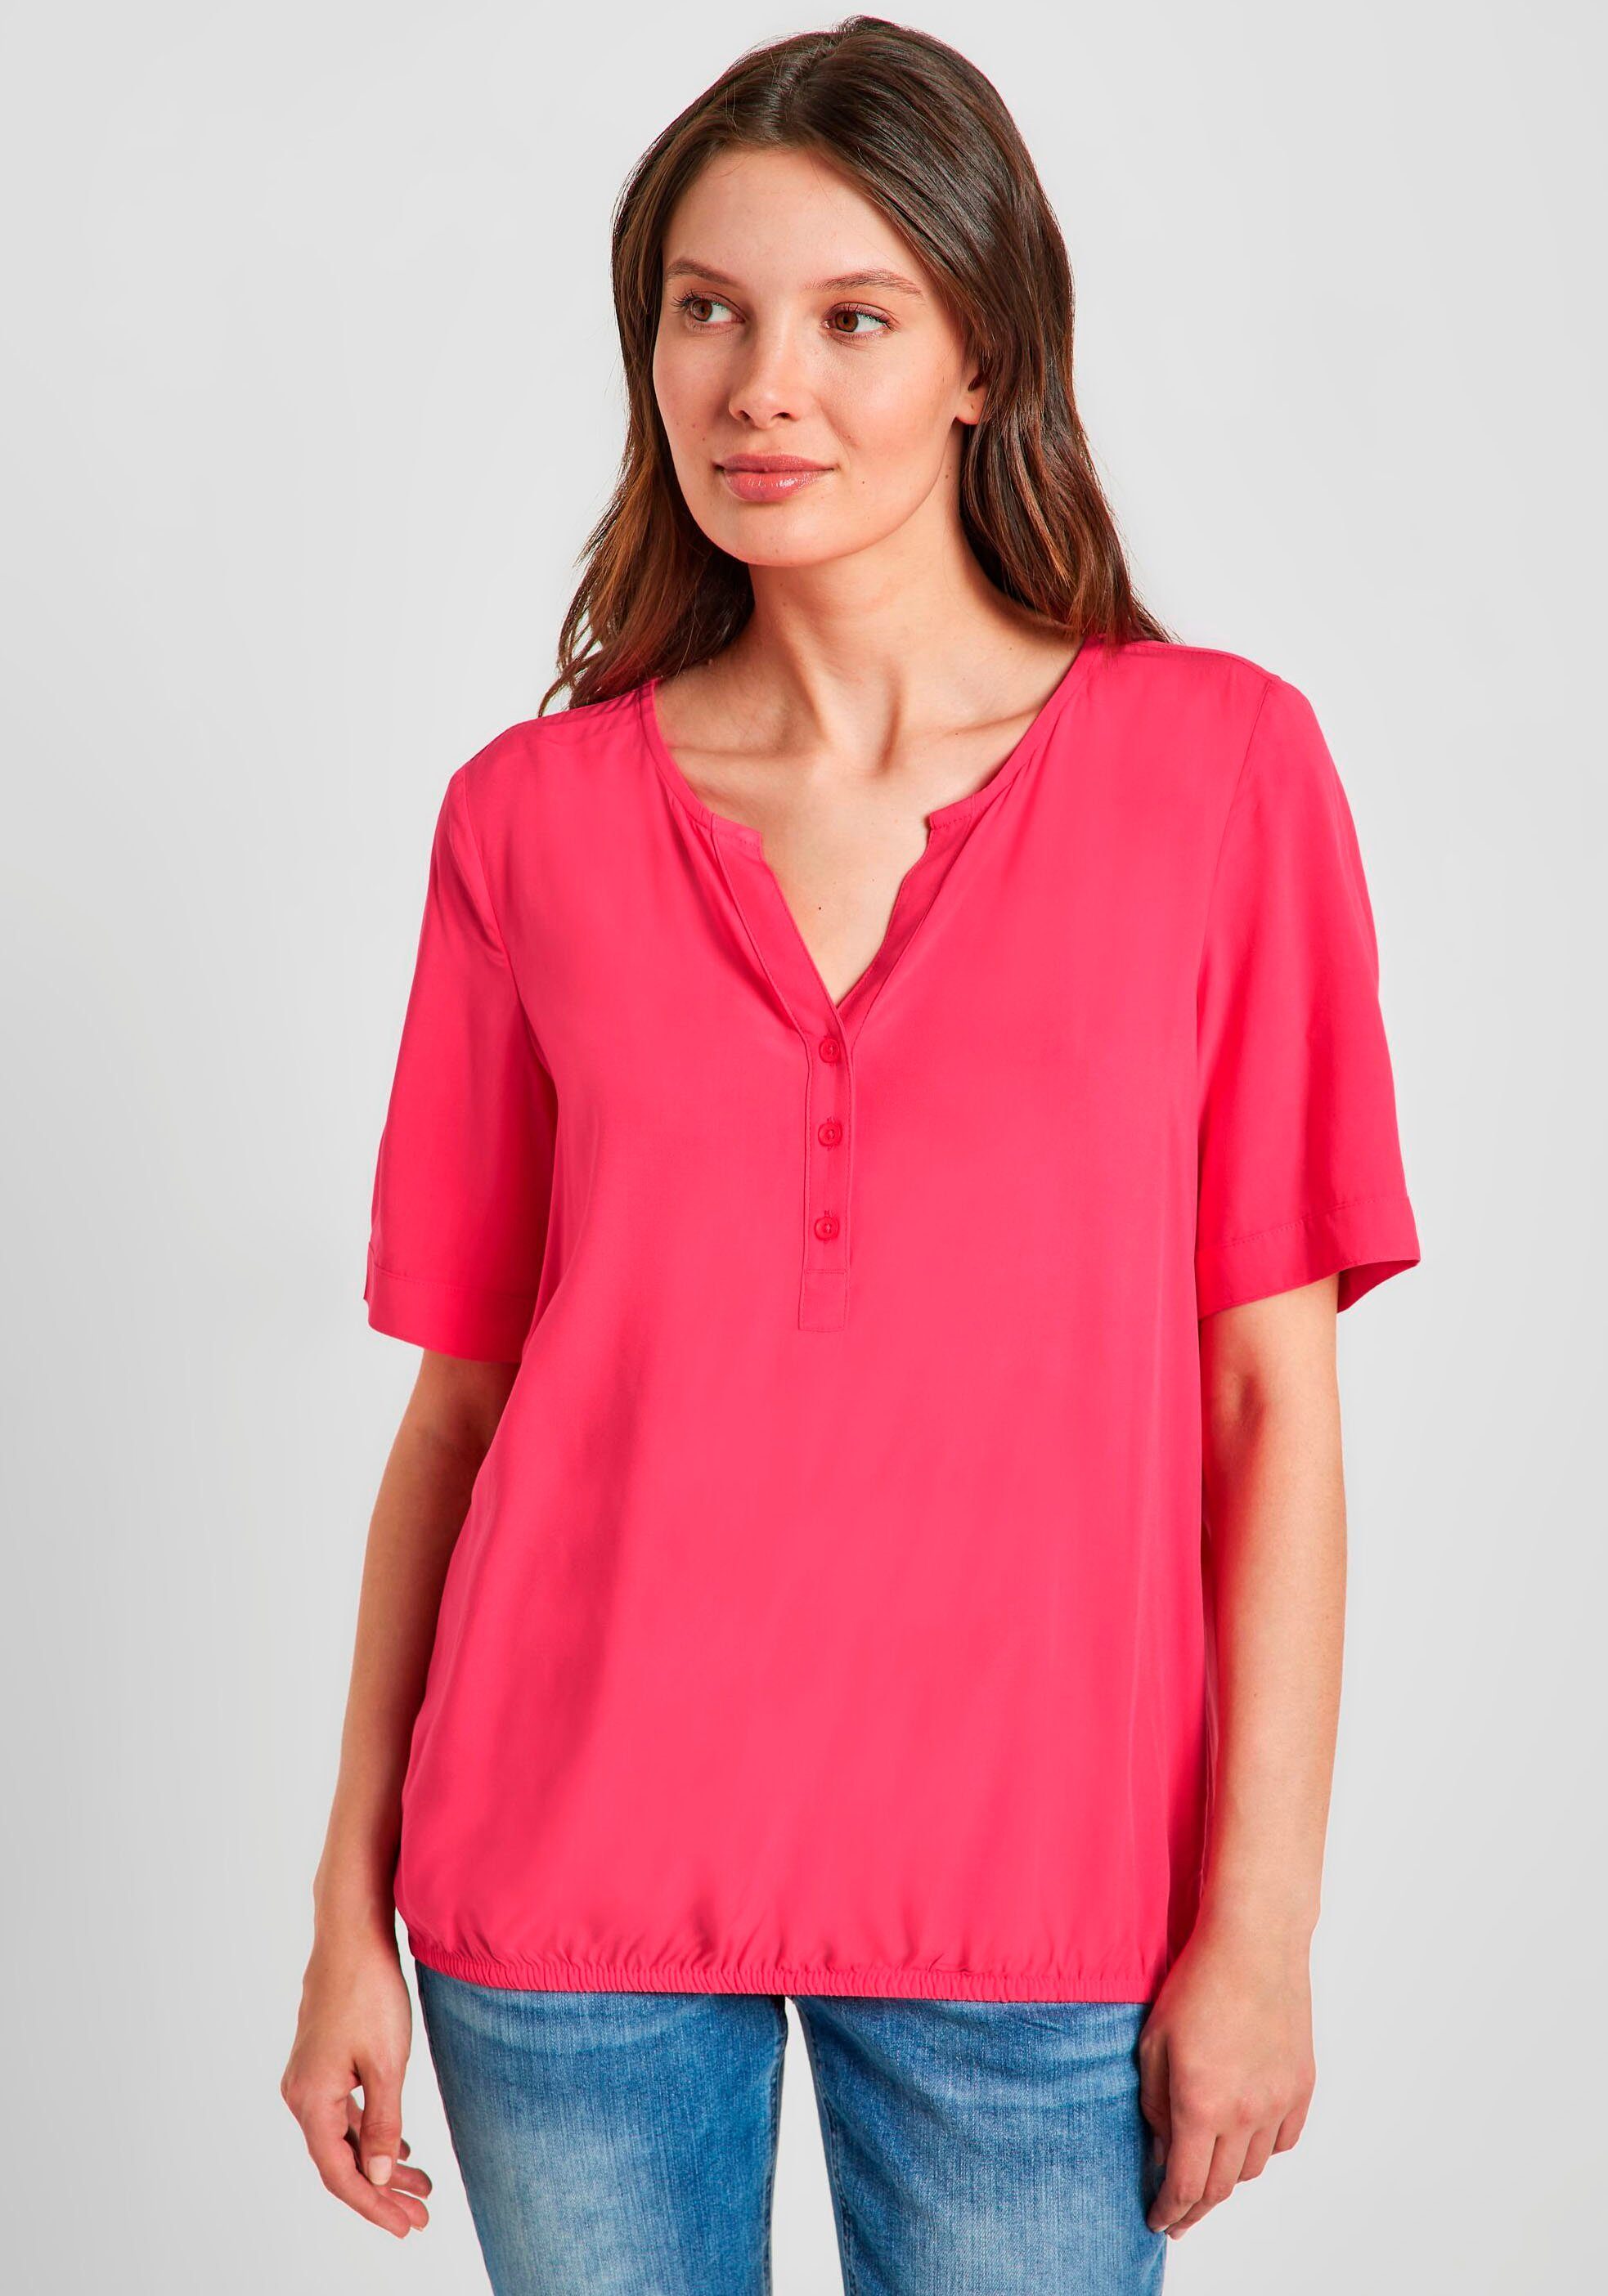 pink Shirtbluse Cecil Serafinoausschnitt mit